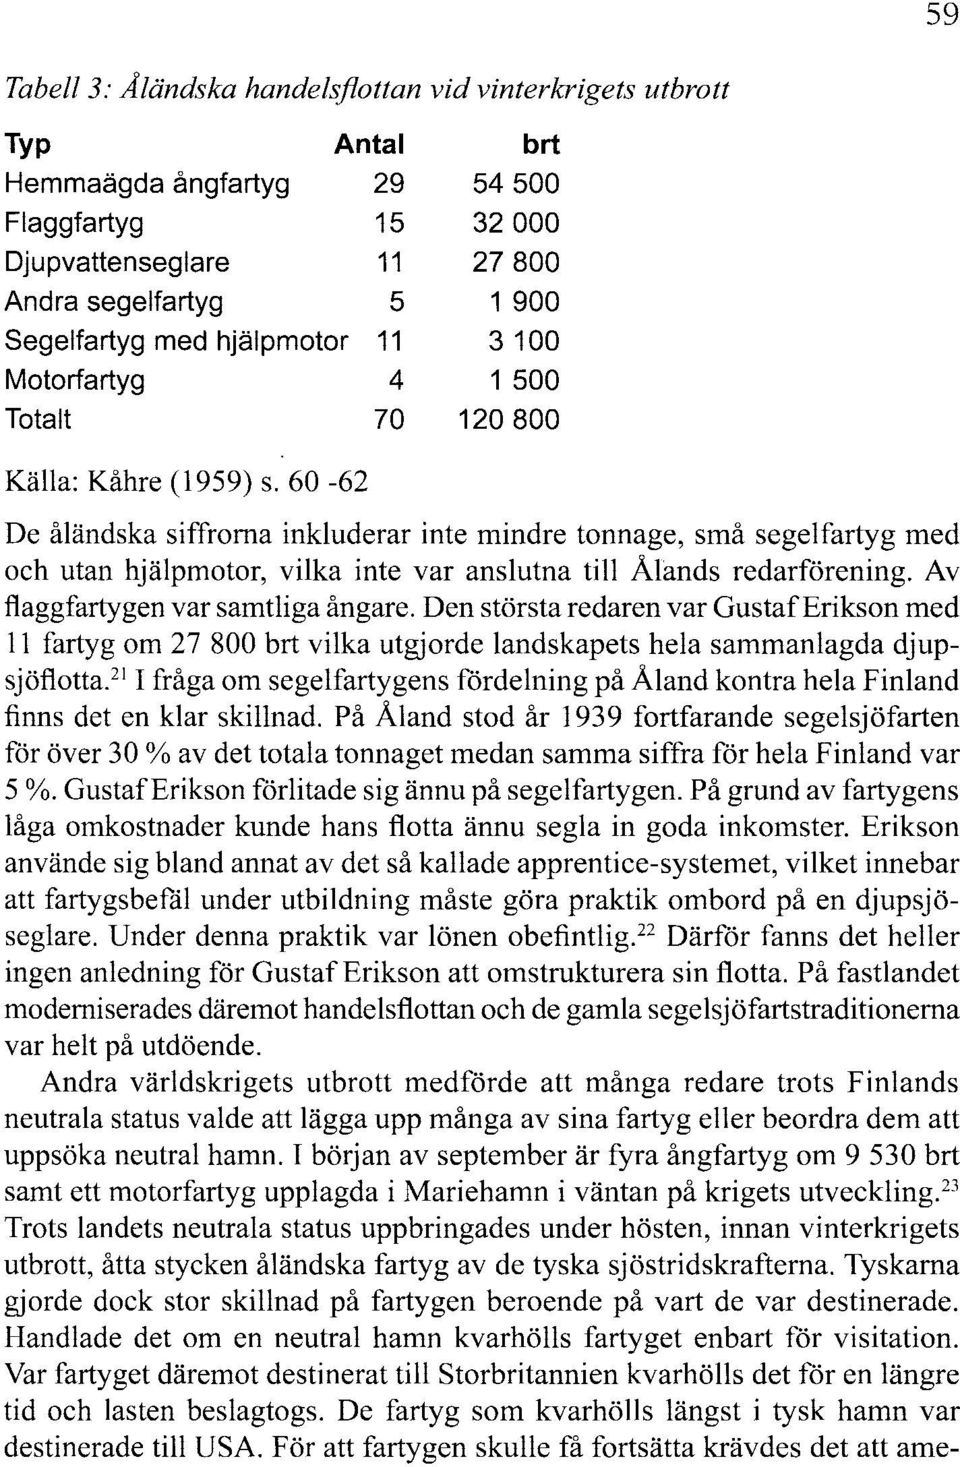 60-62 De åländska siffrorna inkluderar inte mindre tonnage, små segelfartyg med och utan hjälpmotor, vilka inte var anslutna till Ålimds redarförening. Av flaggfartygen var samtliga ångare.